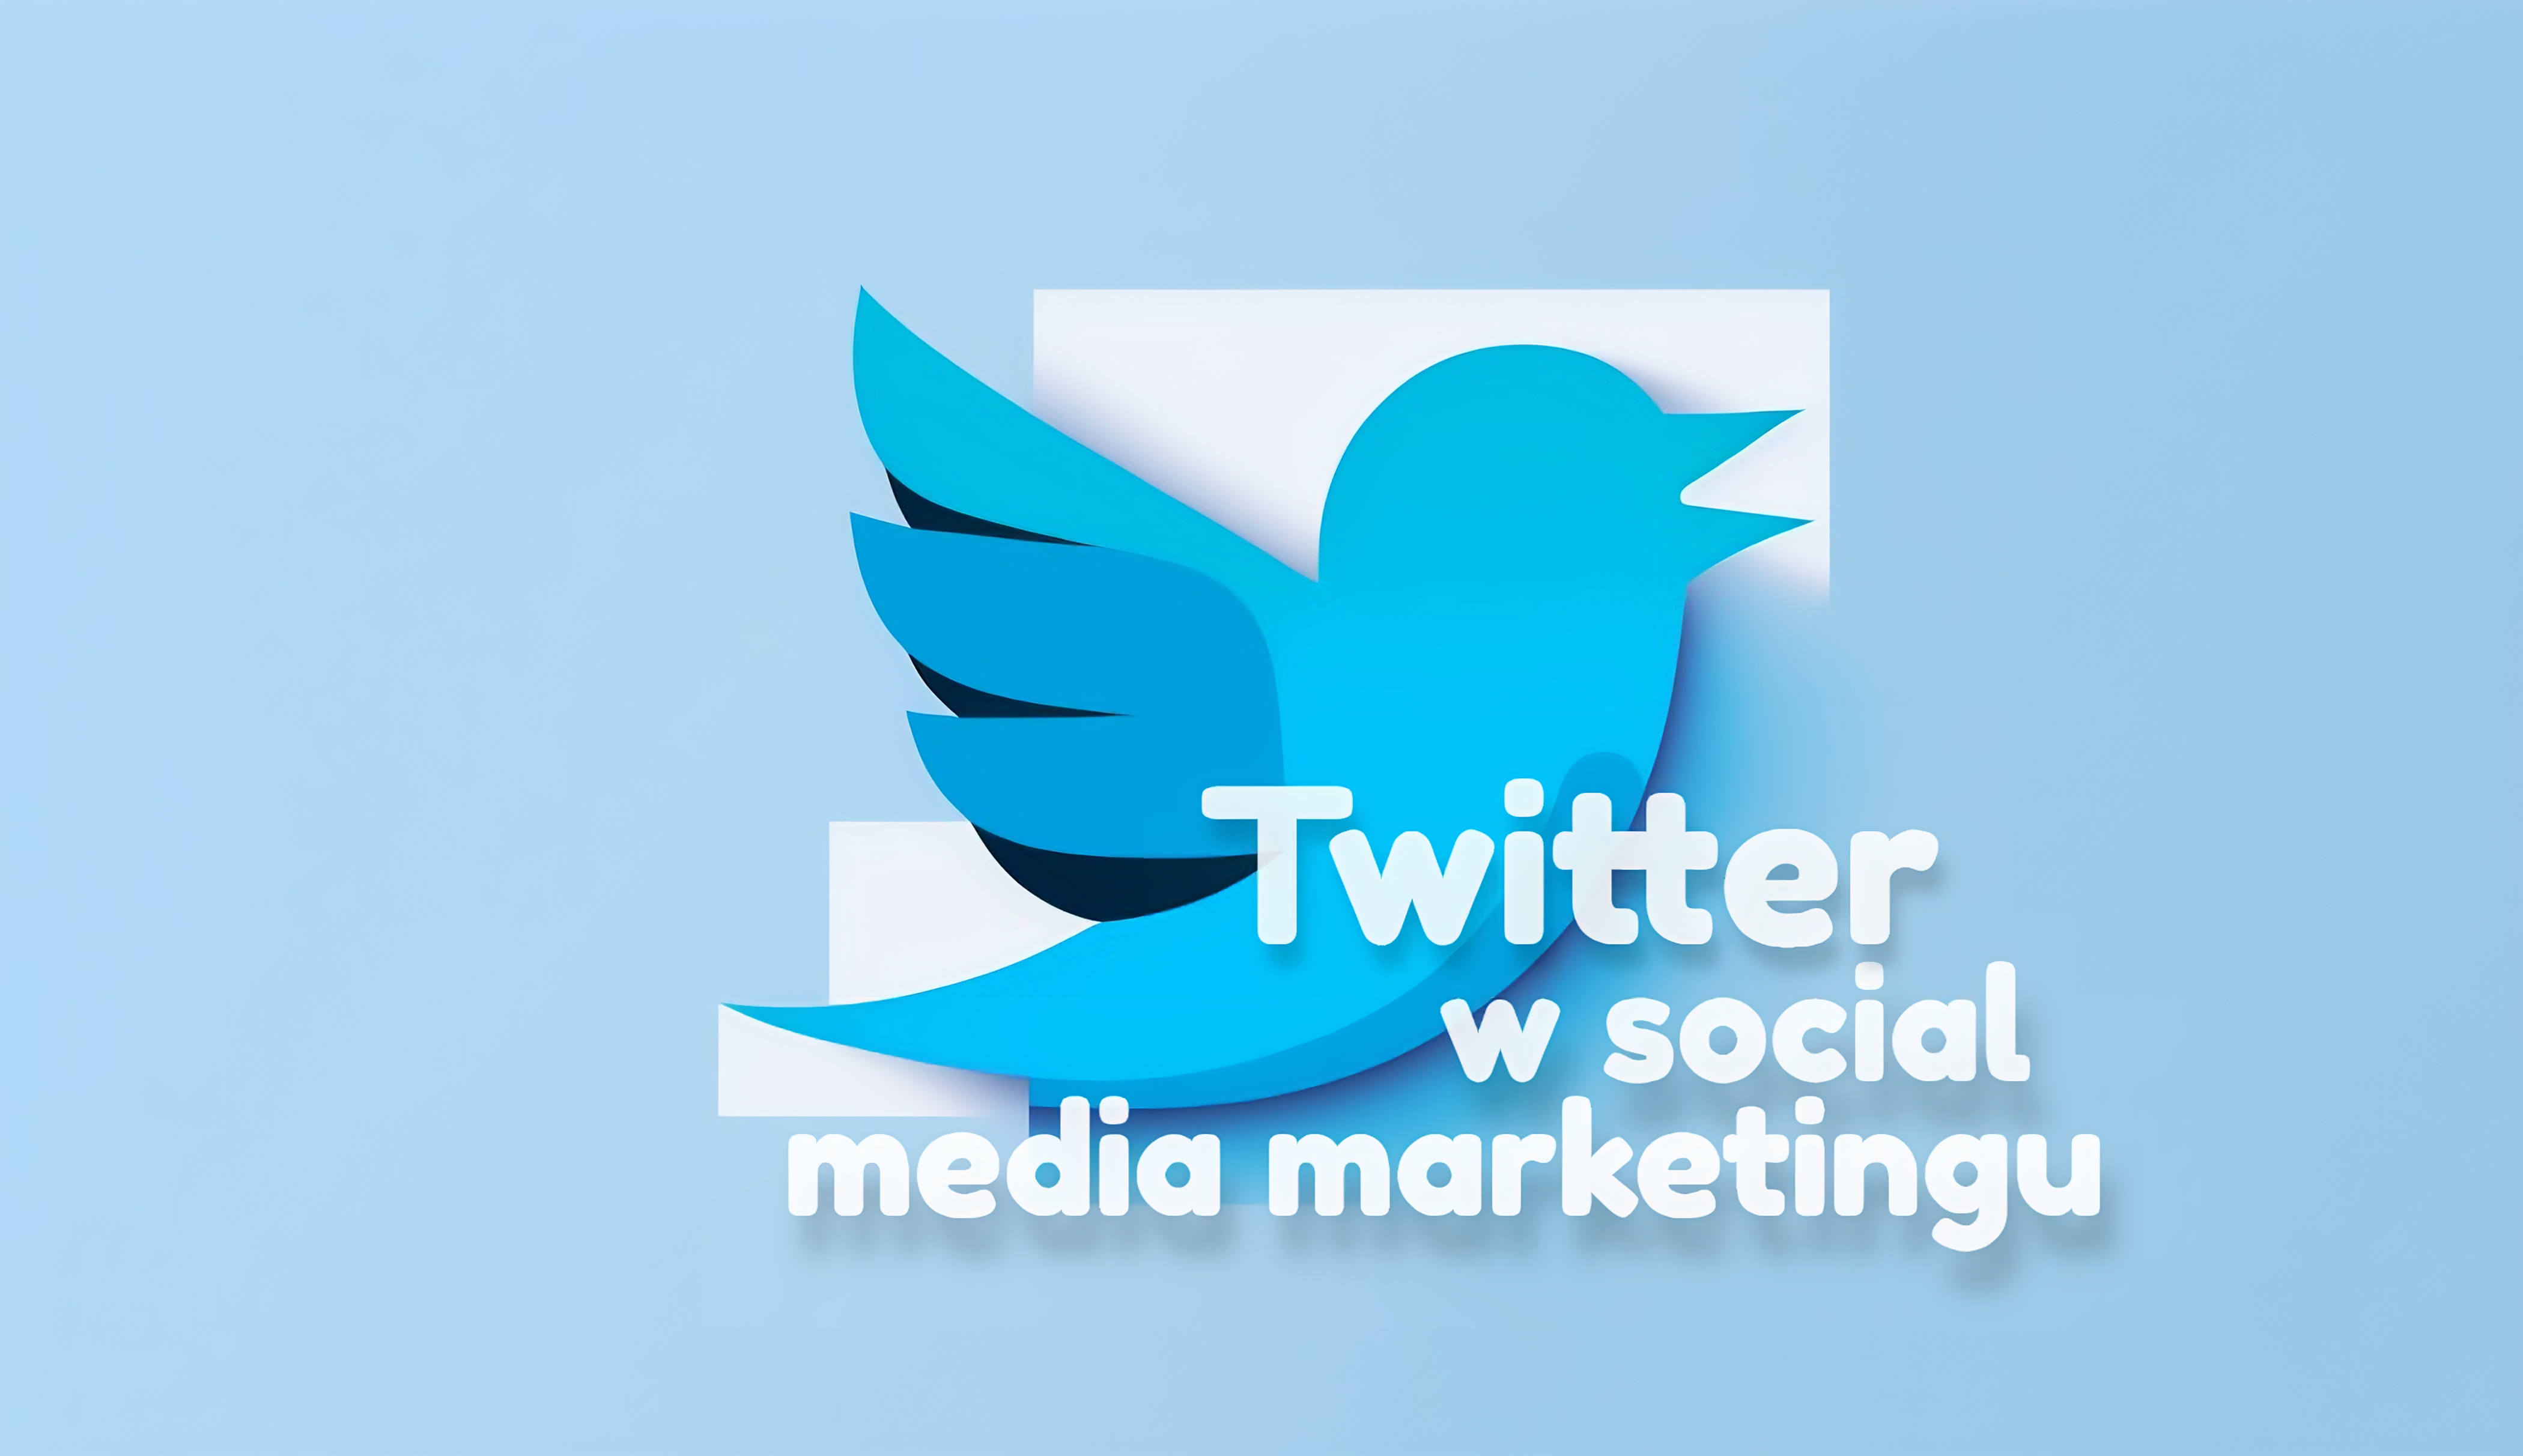 Twitter jako kluczowy element skutecznej strategii marketingowej w mediach społecznościowych